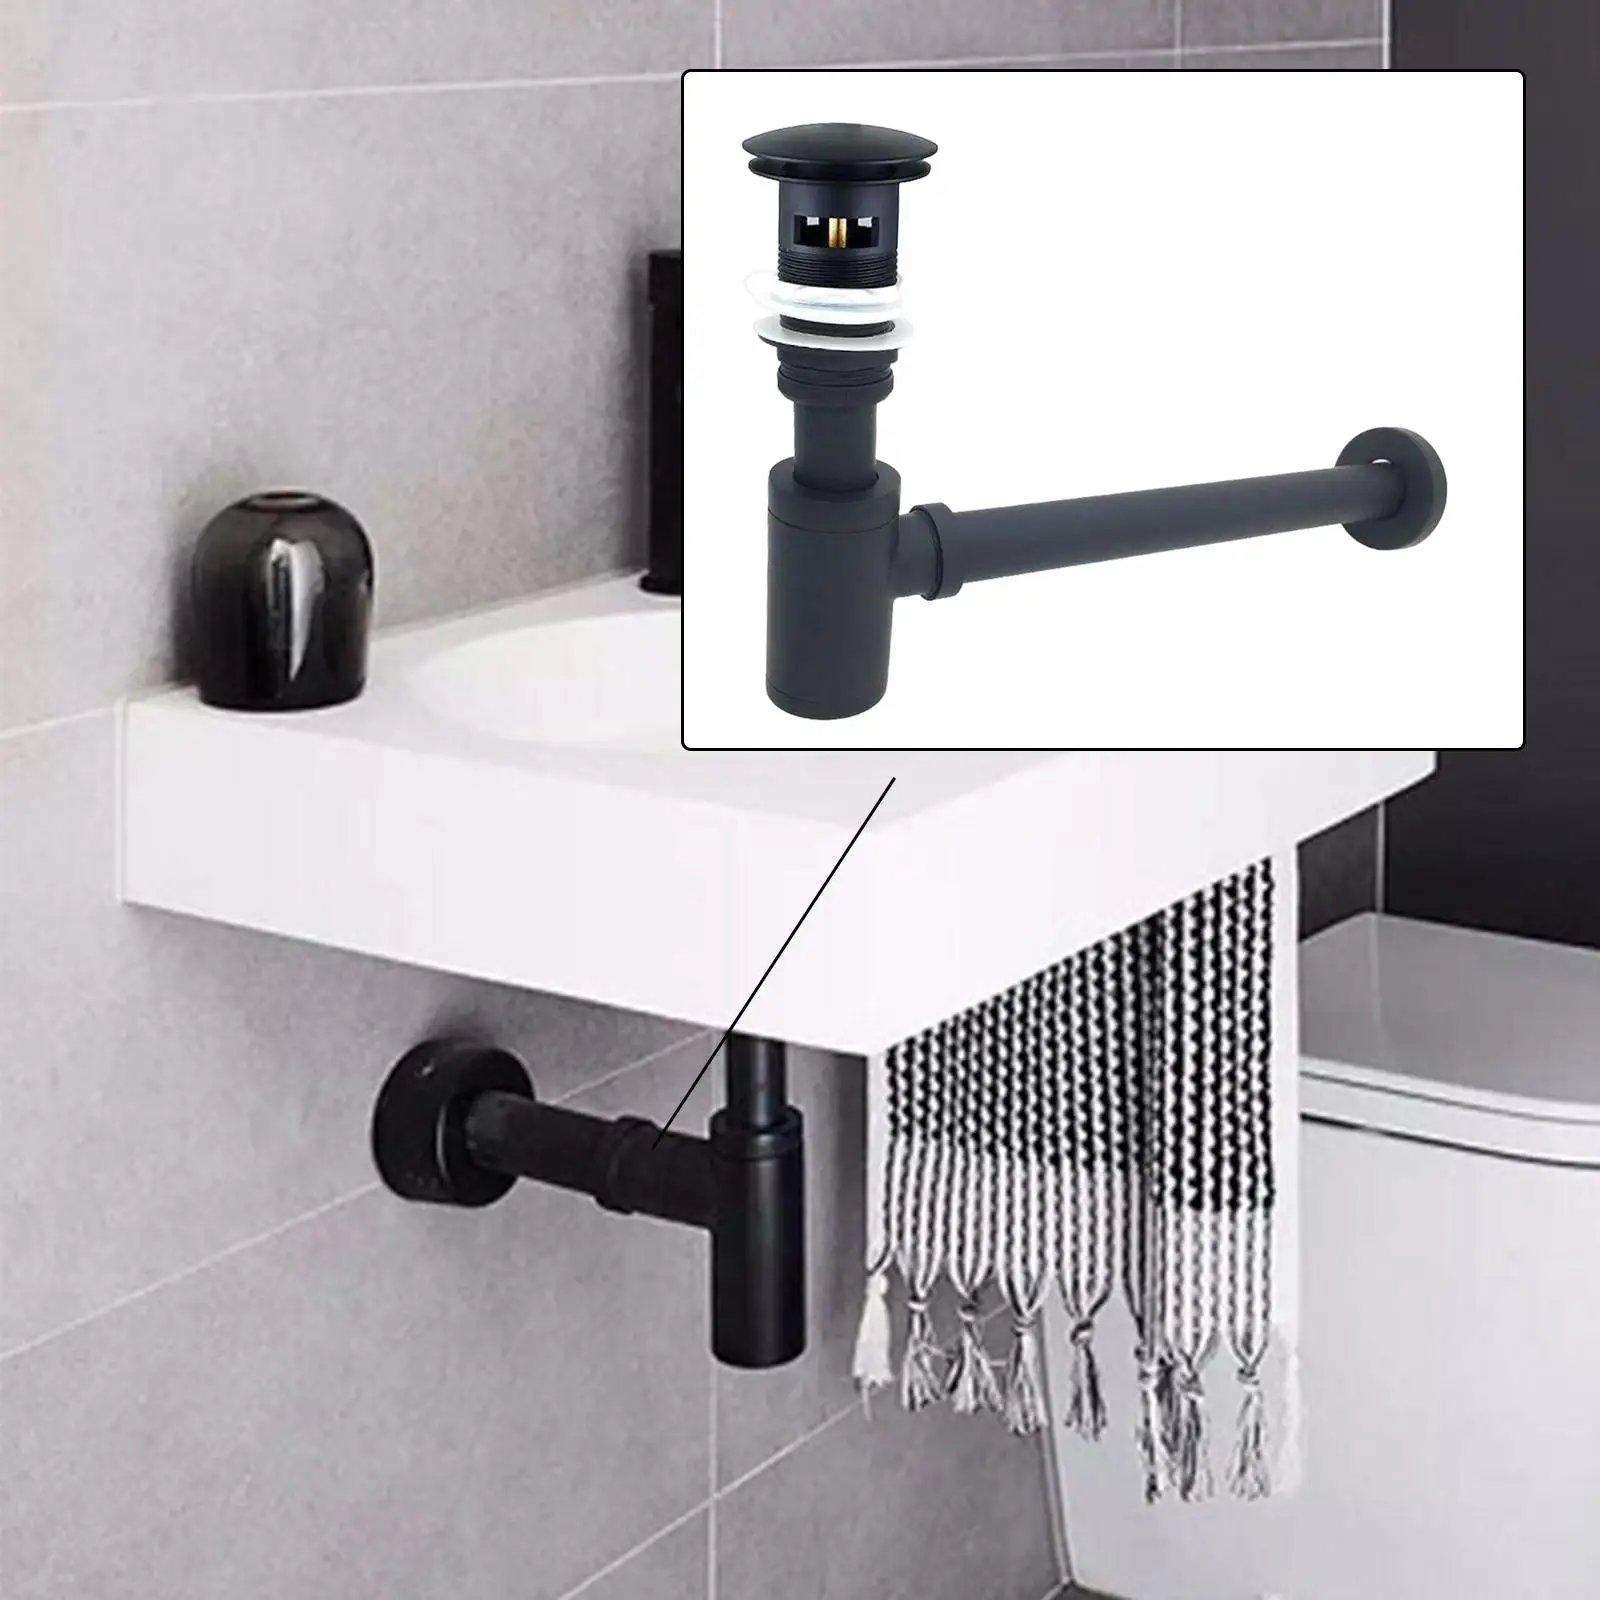 Brass Basin Sink Waste Traps Drain Odour Prevention Modern for Kitchen